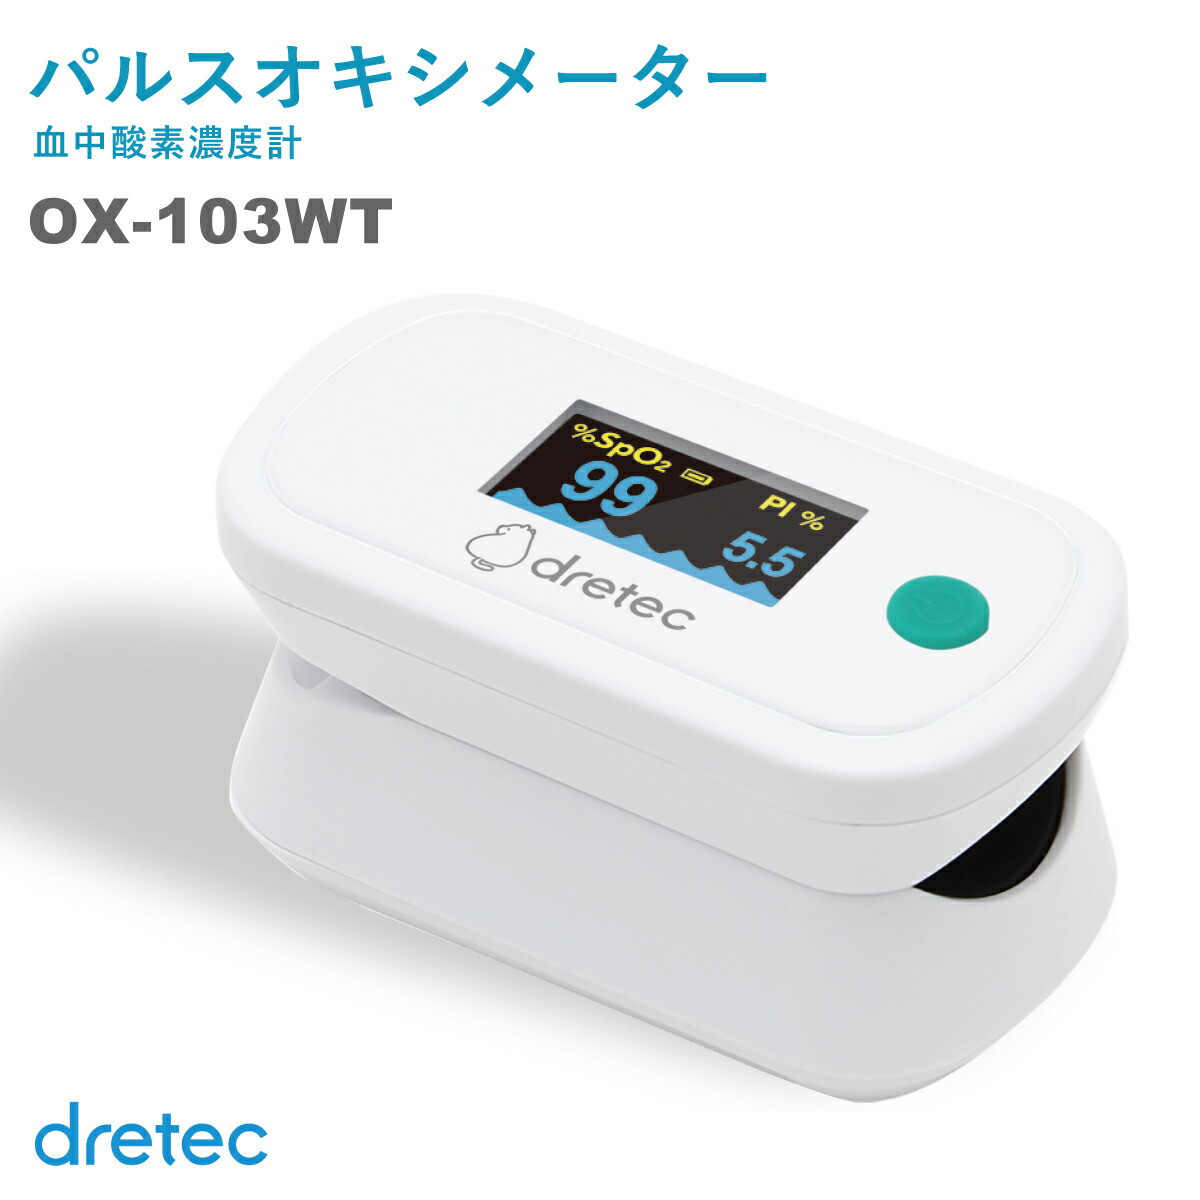 （新モデル）医療機器認証 パルスオキシメーター 医療用 dretec ドリテック 日本メーカー  血中酸素濃度計 OX-103WT  有機EL画面 Pl測定  看護師 ナース